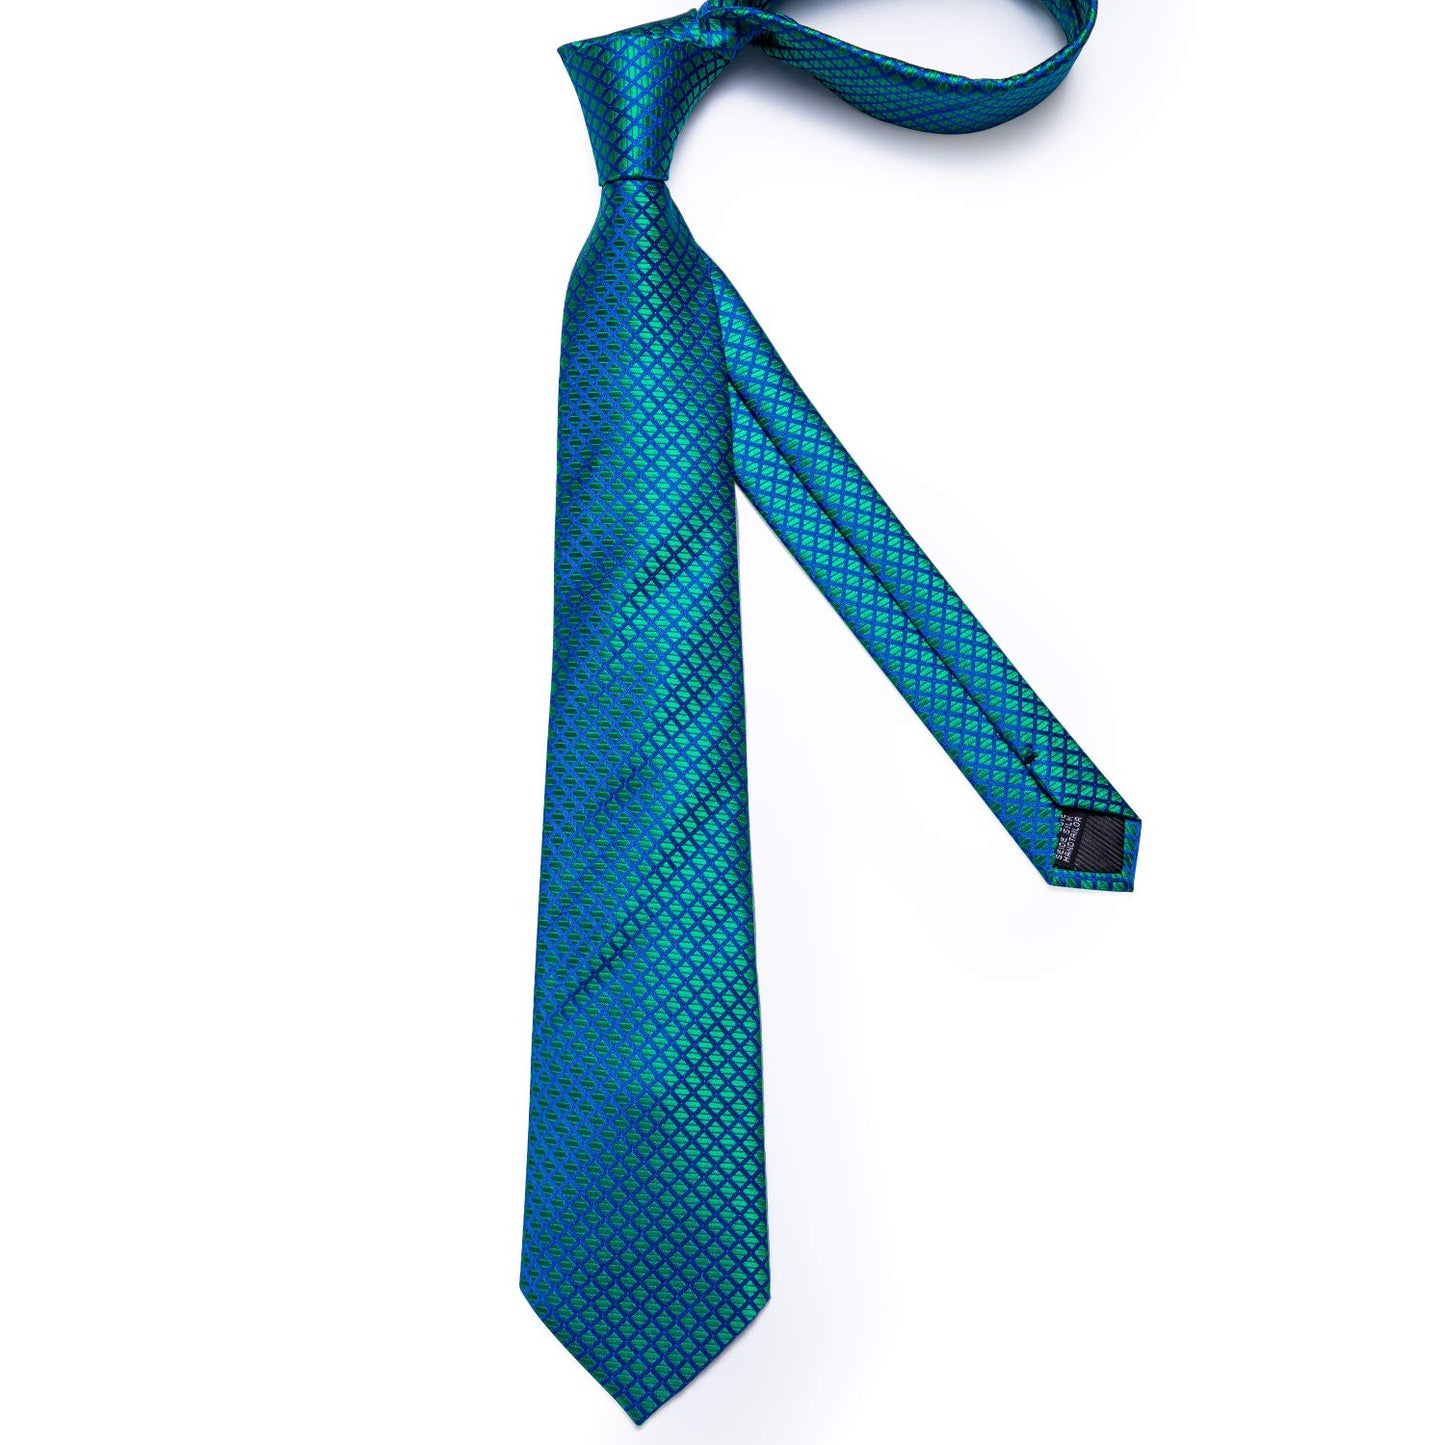 Teal Tie Plaid Necktie Silk Woven Tie Cufflinks Set for Men Designer(Size: One Size)